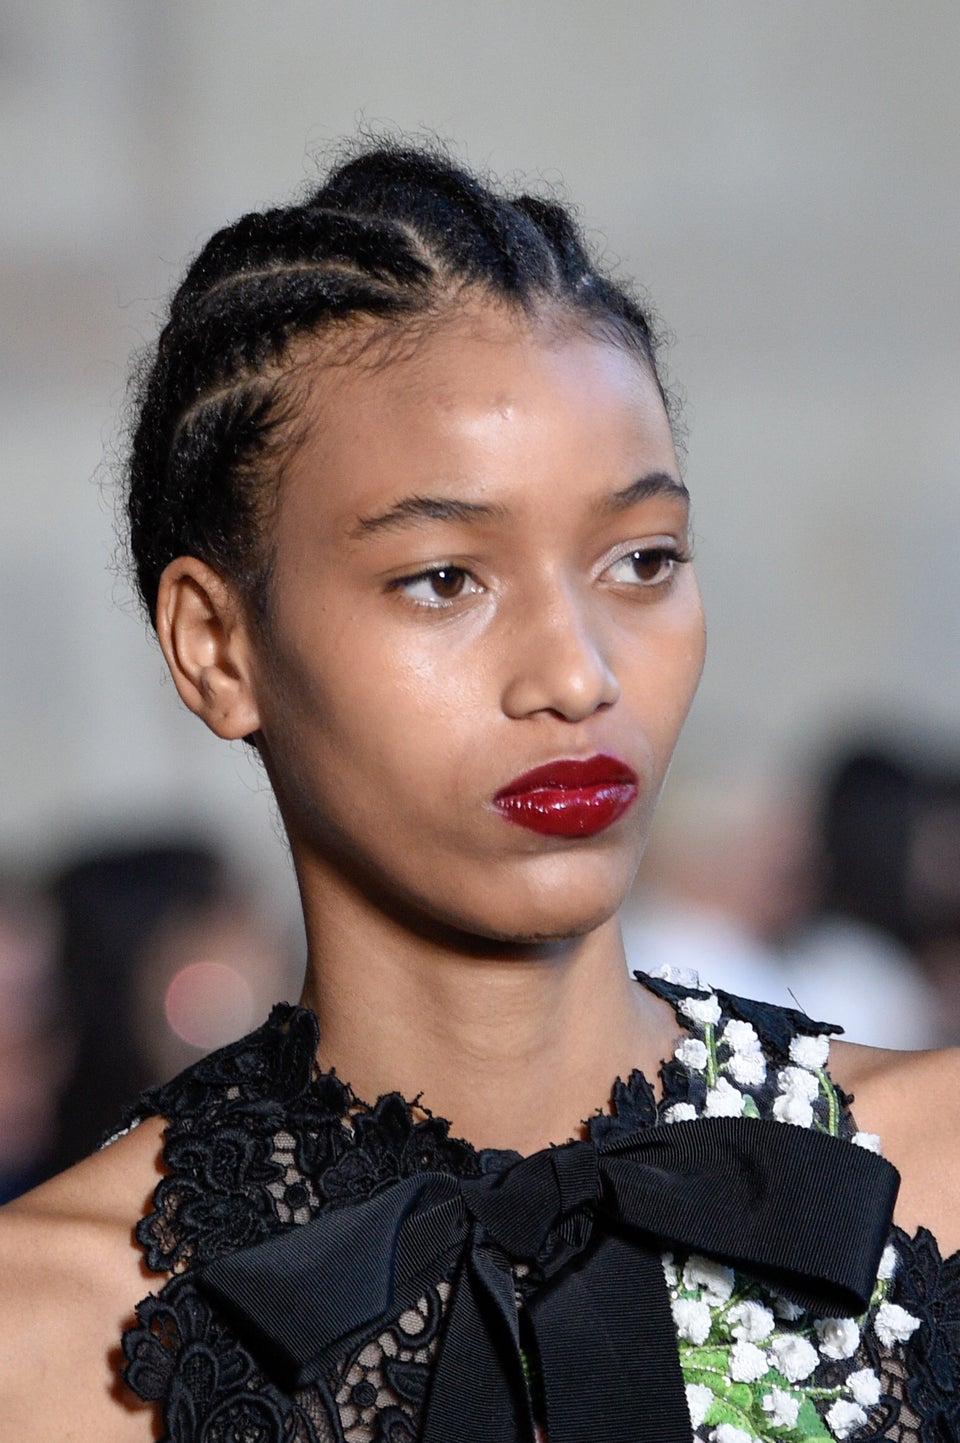 Diversity Among Models Barely Increased At New York Fashion Week This Season